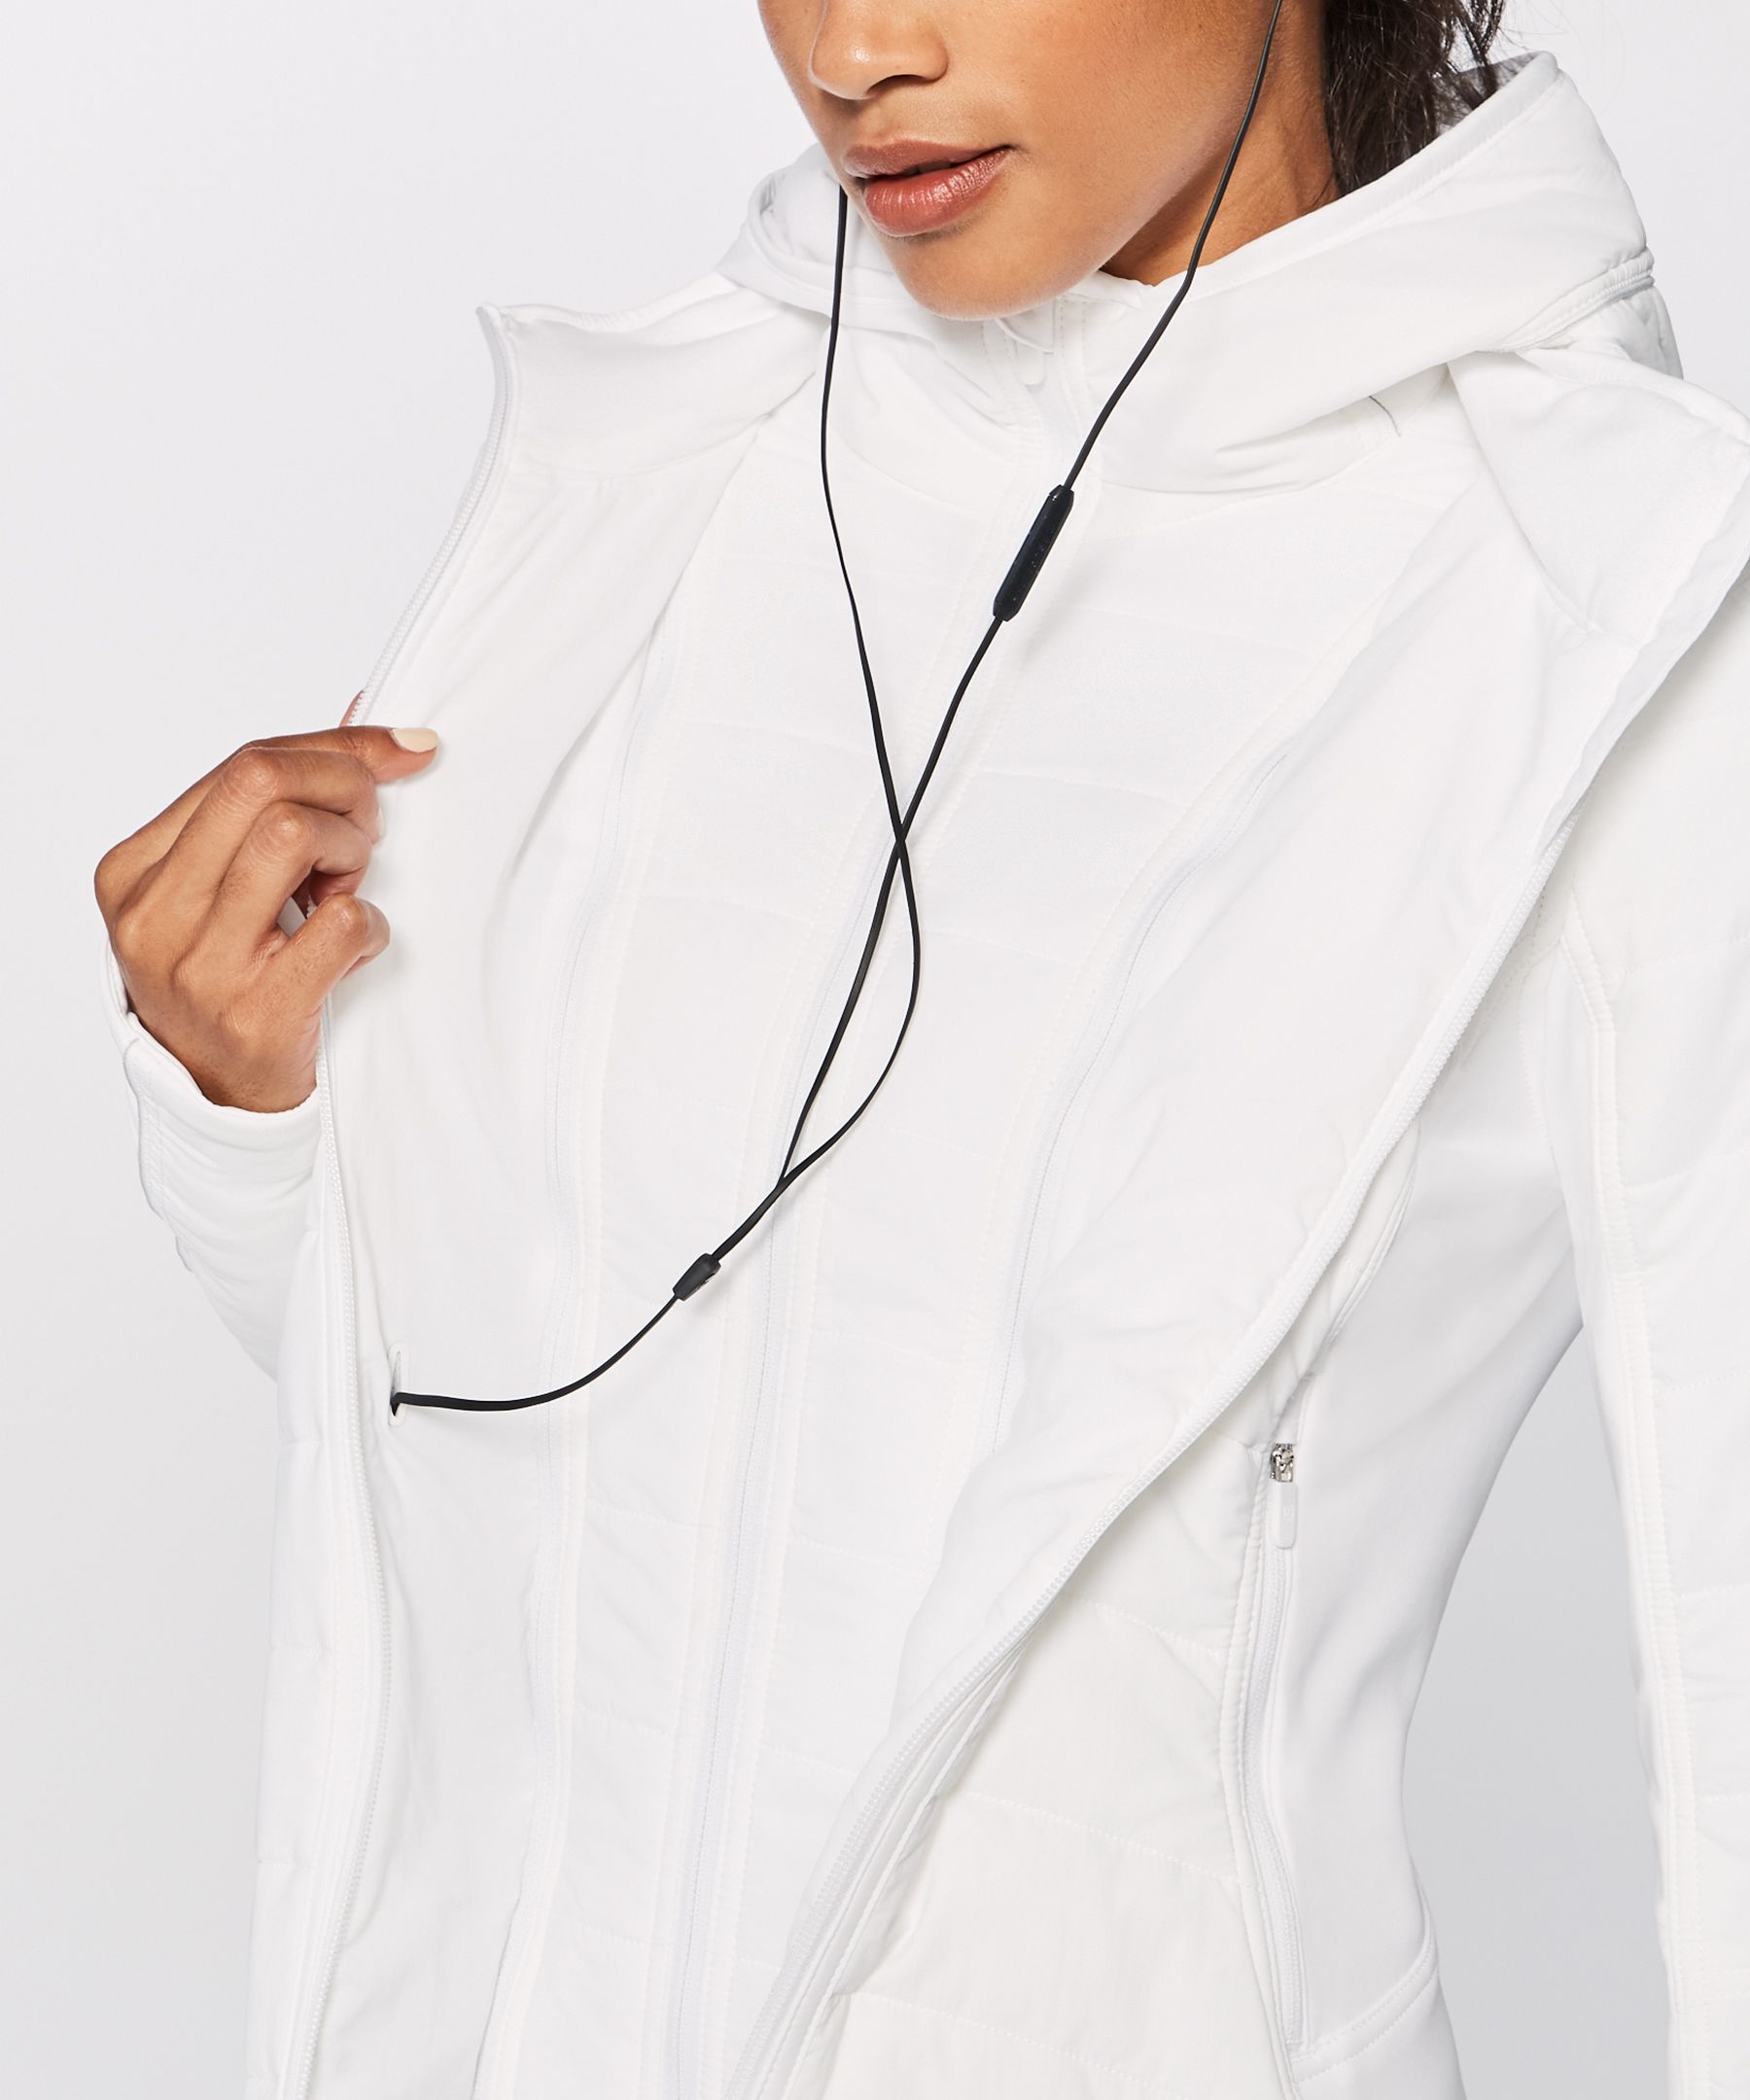 lululemon extra mile jacket white